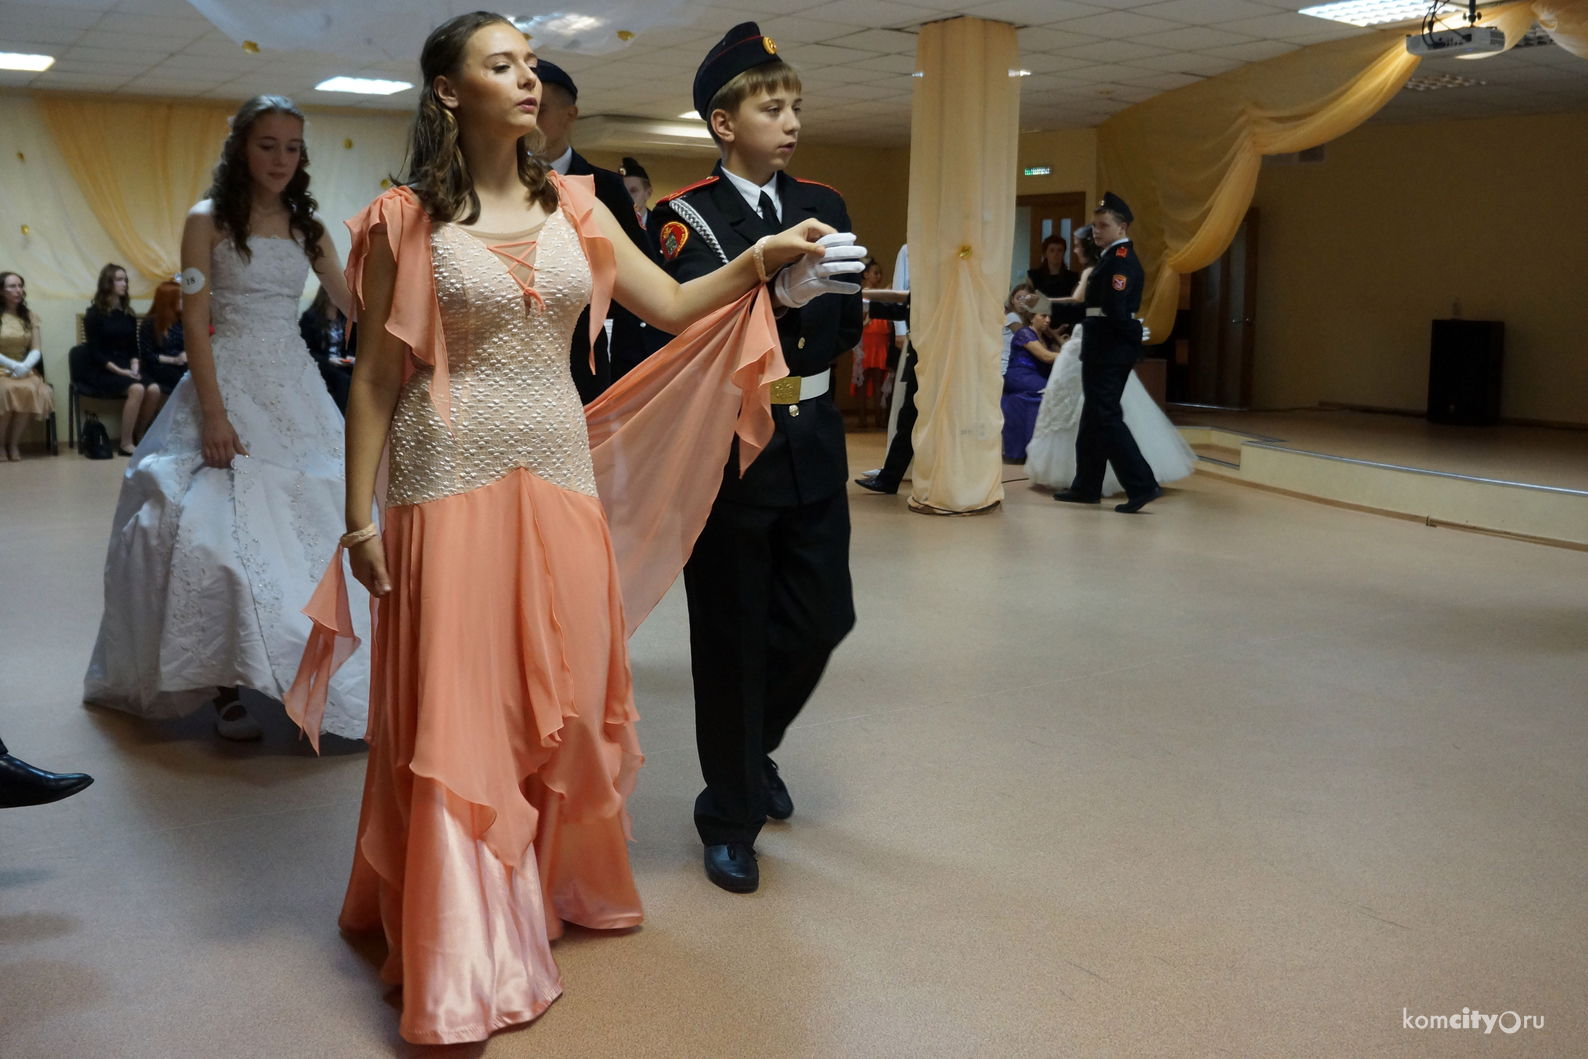 Участники «Литературного бала», состоявшегося в Комсомольске-на-Амуре научились танцевать четыре исторических танца 